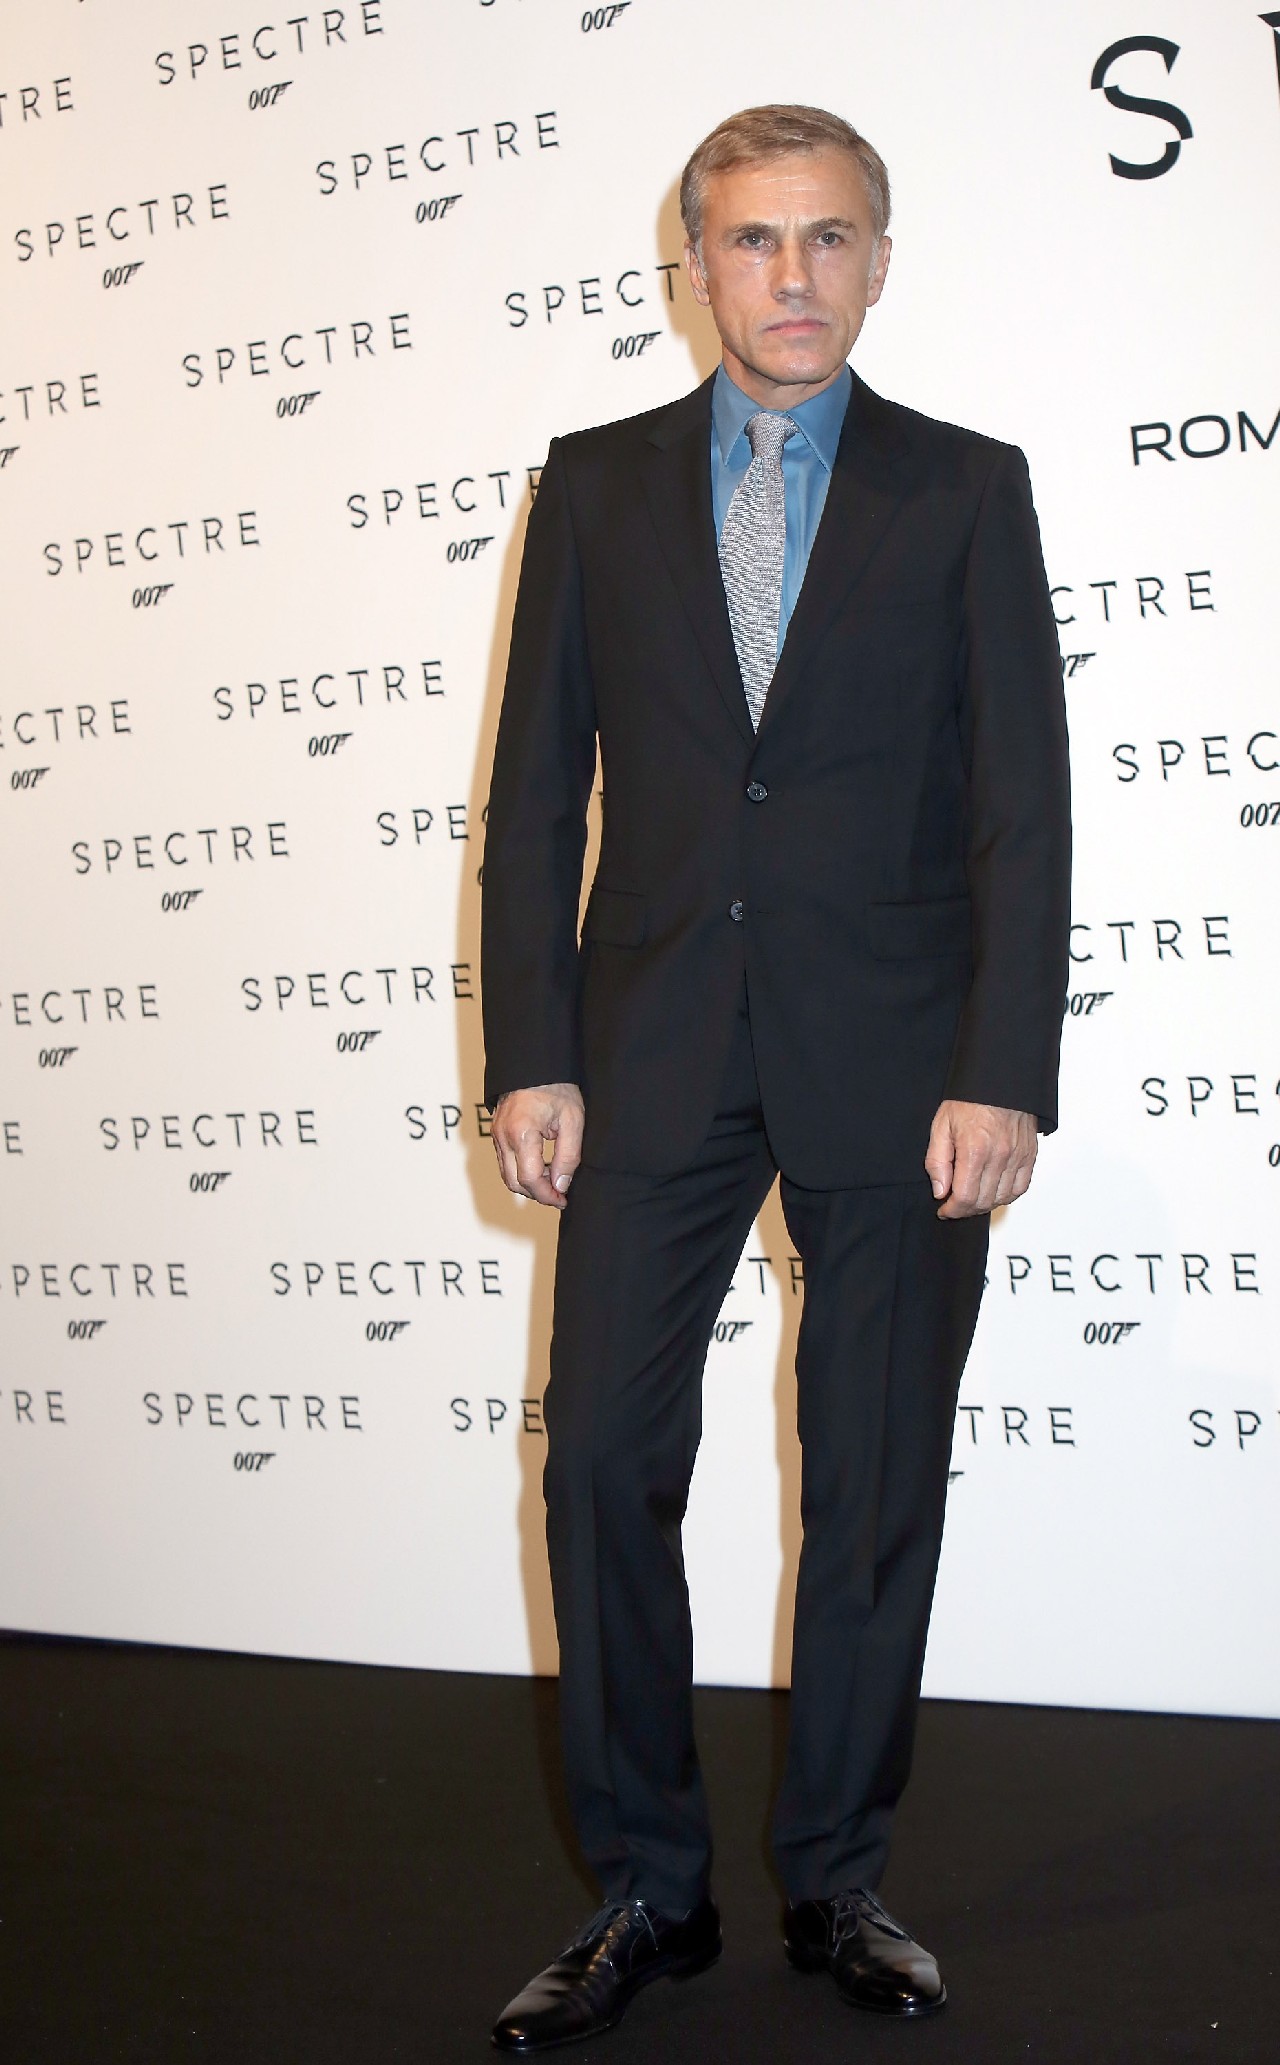 007 Spectre premiere: da Parigi a Madrid, da Berlino a Mosca, i red carpet e i look delle star